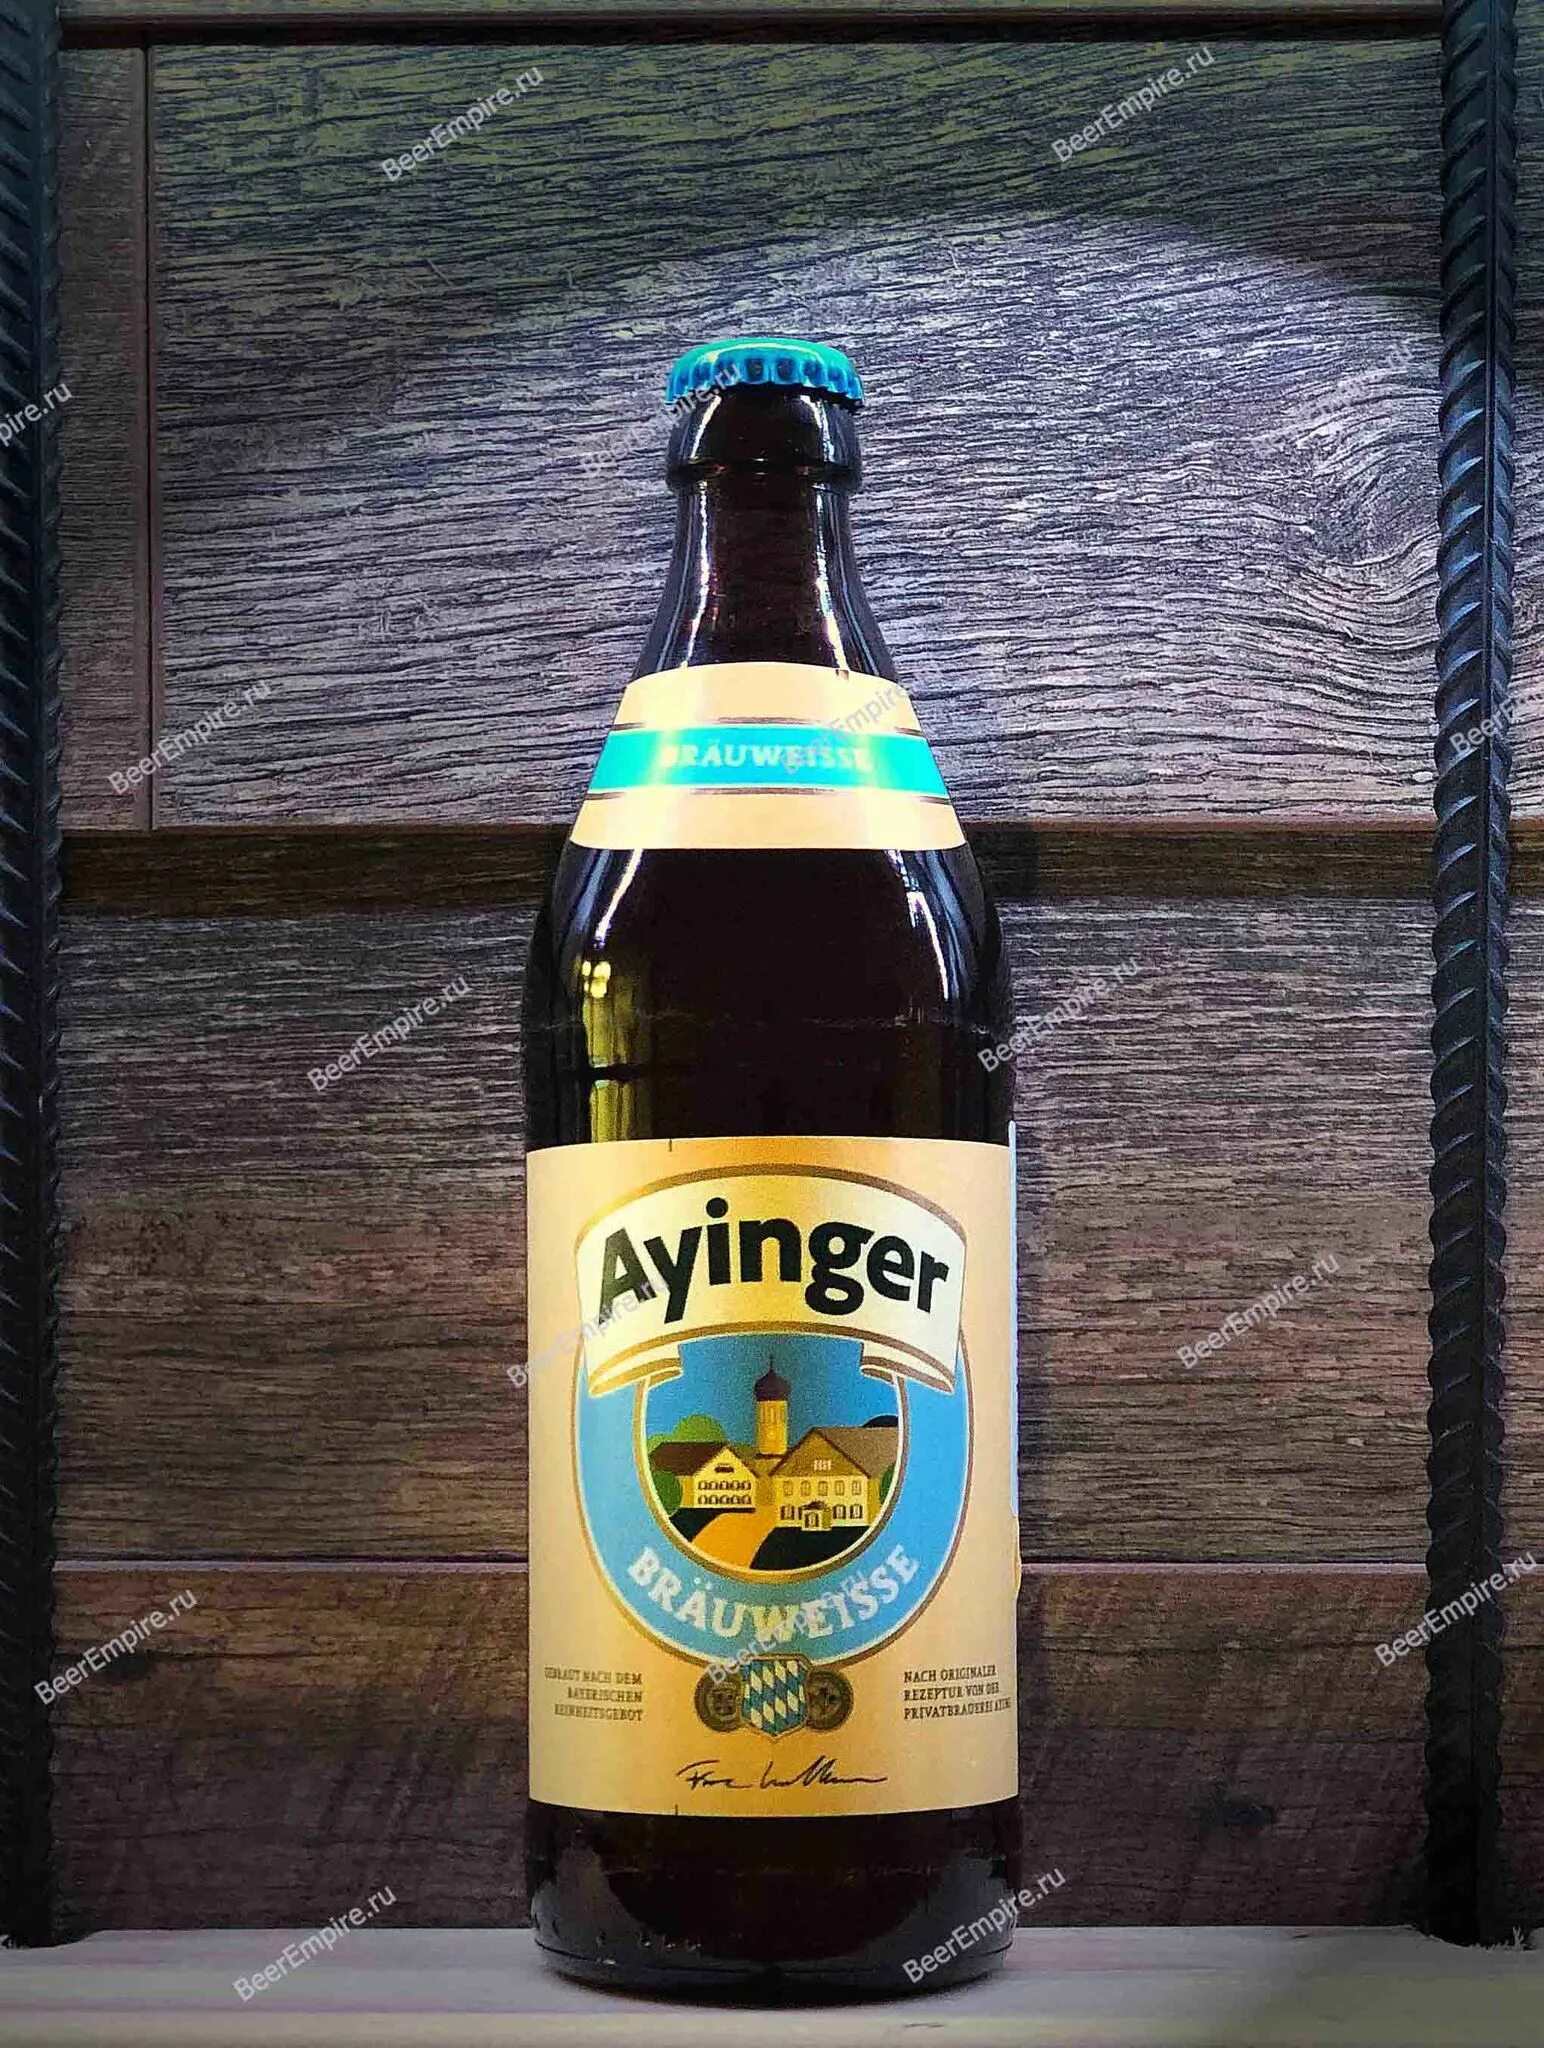 Пиво ayinger купить. Айингер Бройвайссе. Айингер Бройвайссе пиво. Немецкое пиво Ayinger. Ayinger пиво пшеничное.